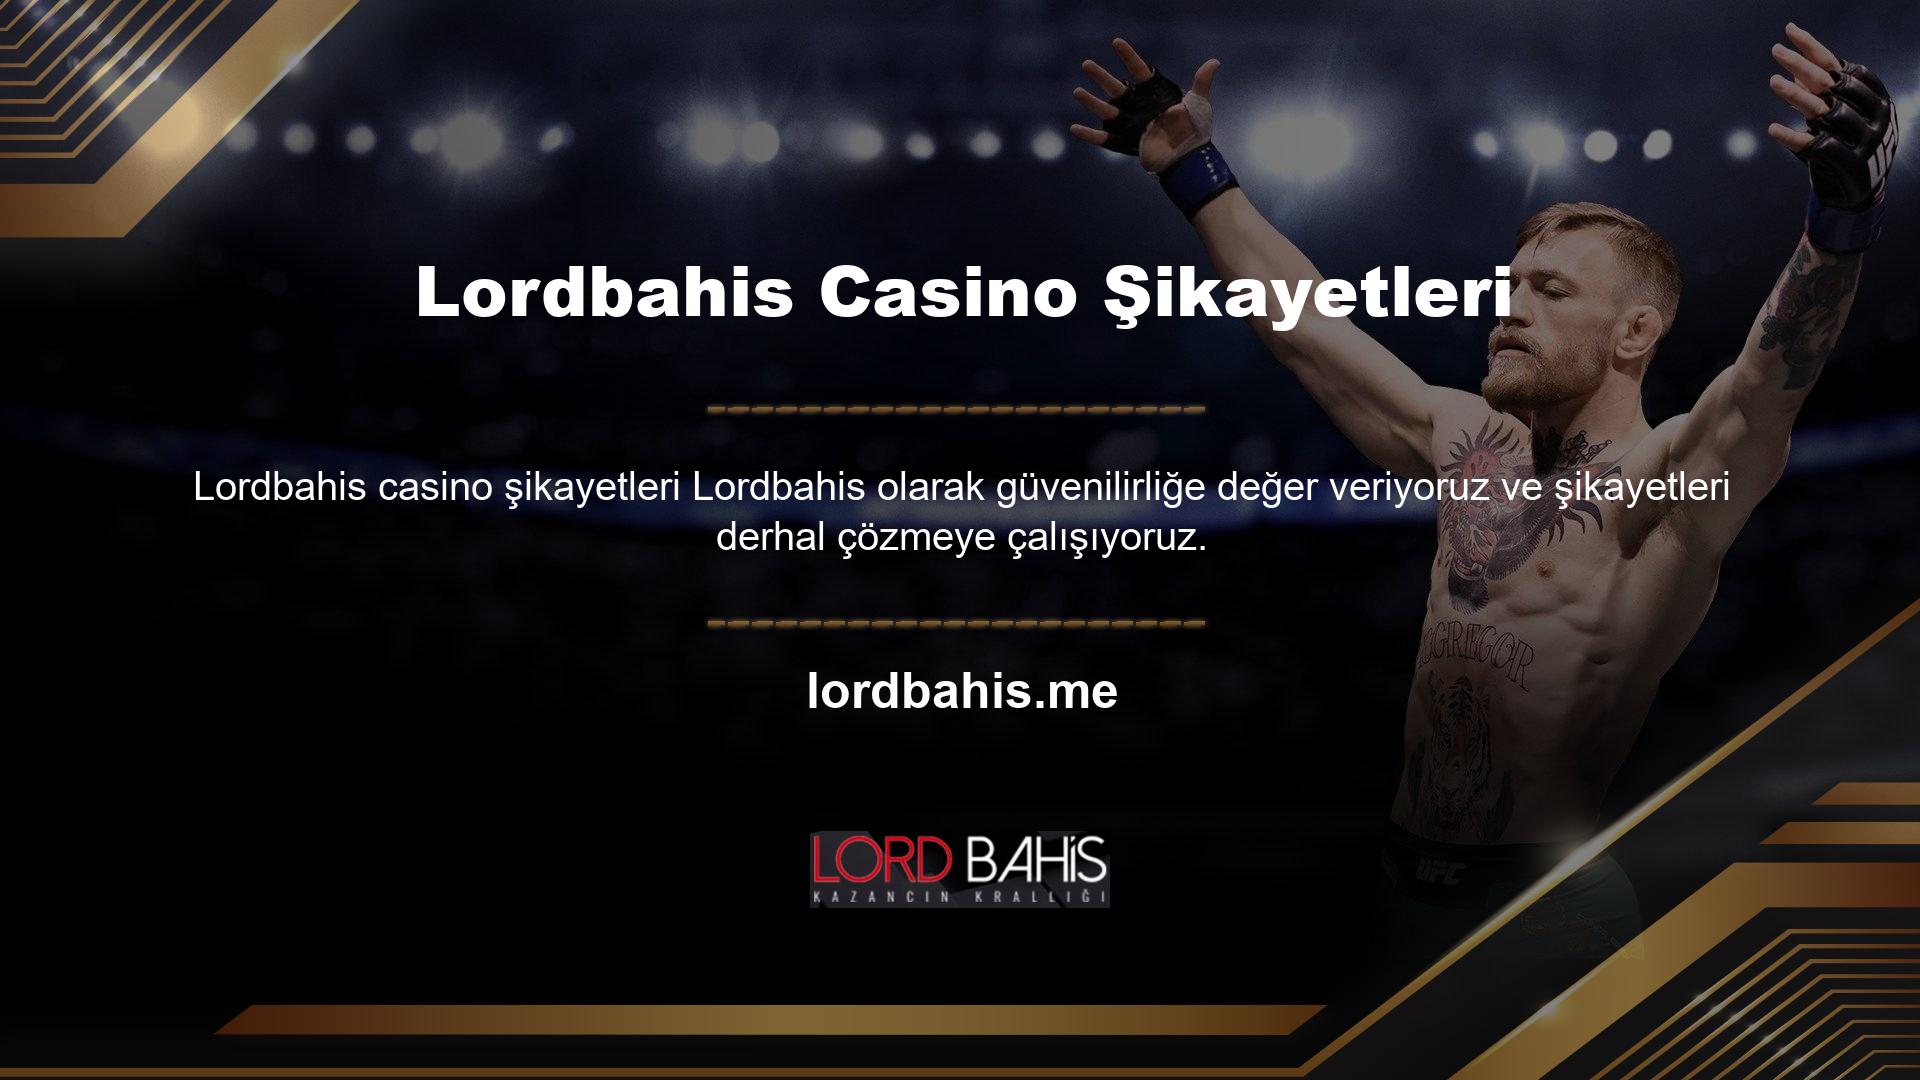 Lordbahis casino kamu lisansına ilişkin şikayetlere ilişkin bilgiler tüm bahisçilerin kullanımına açıktır